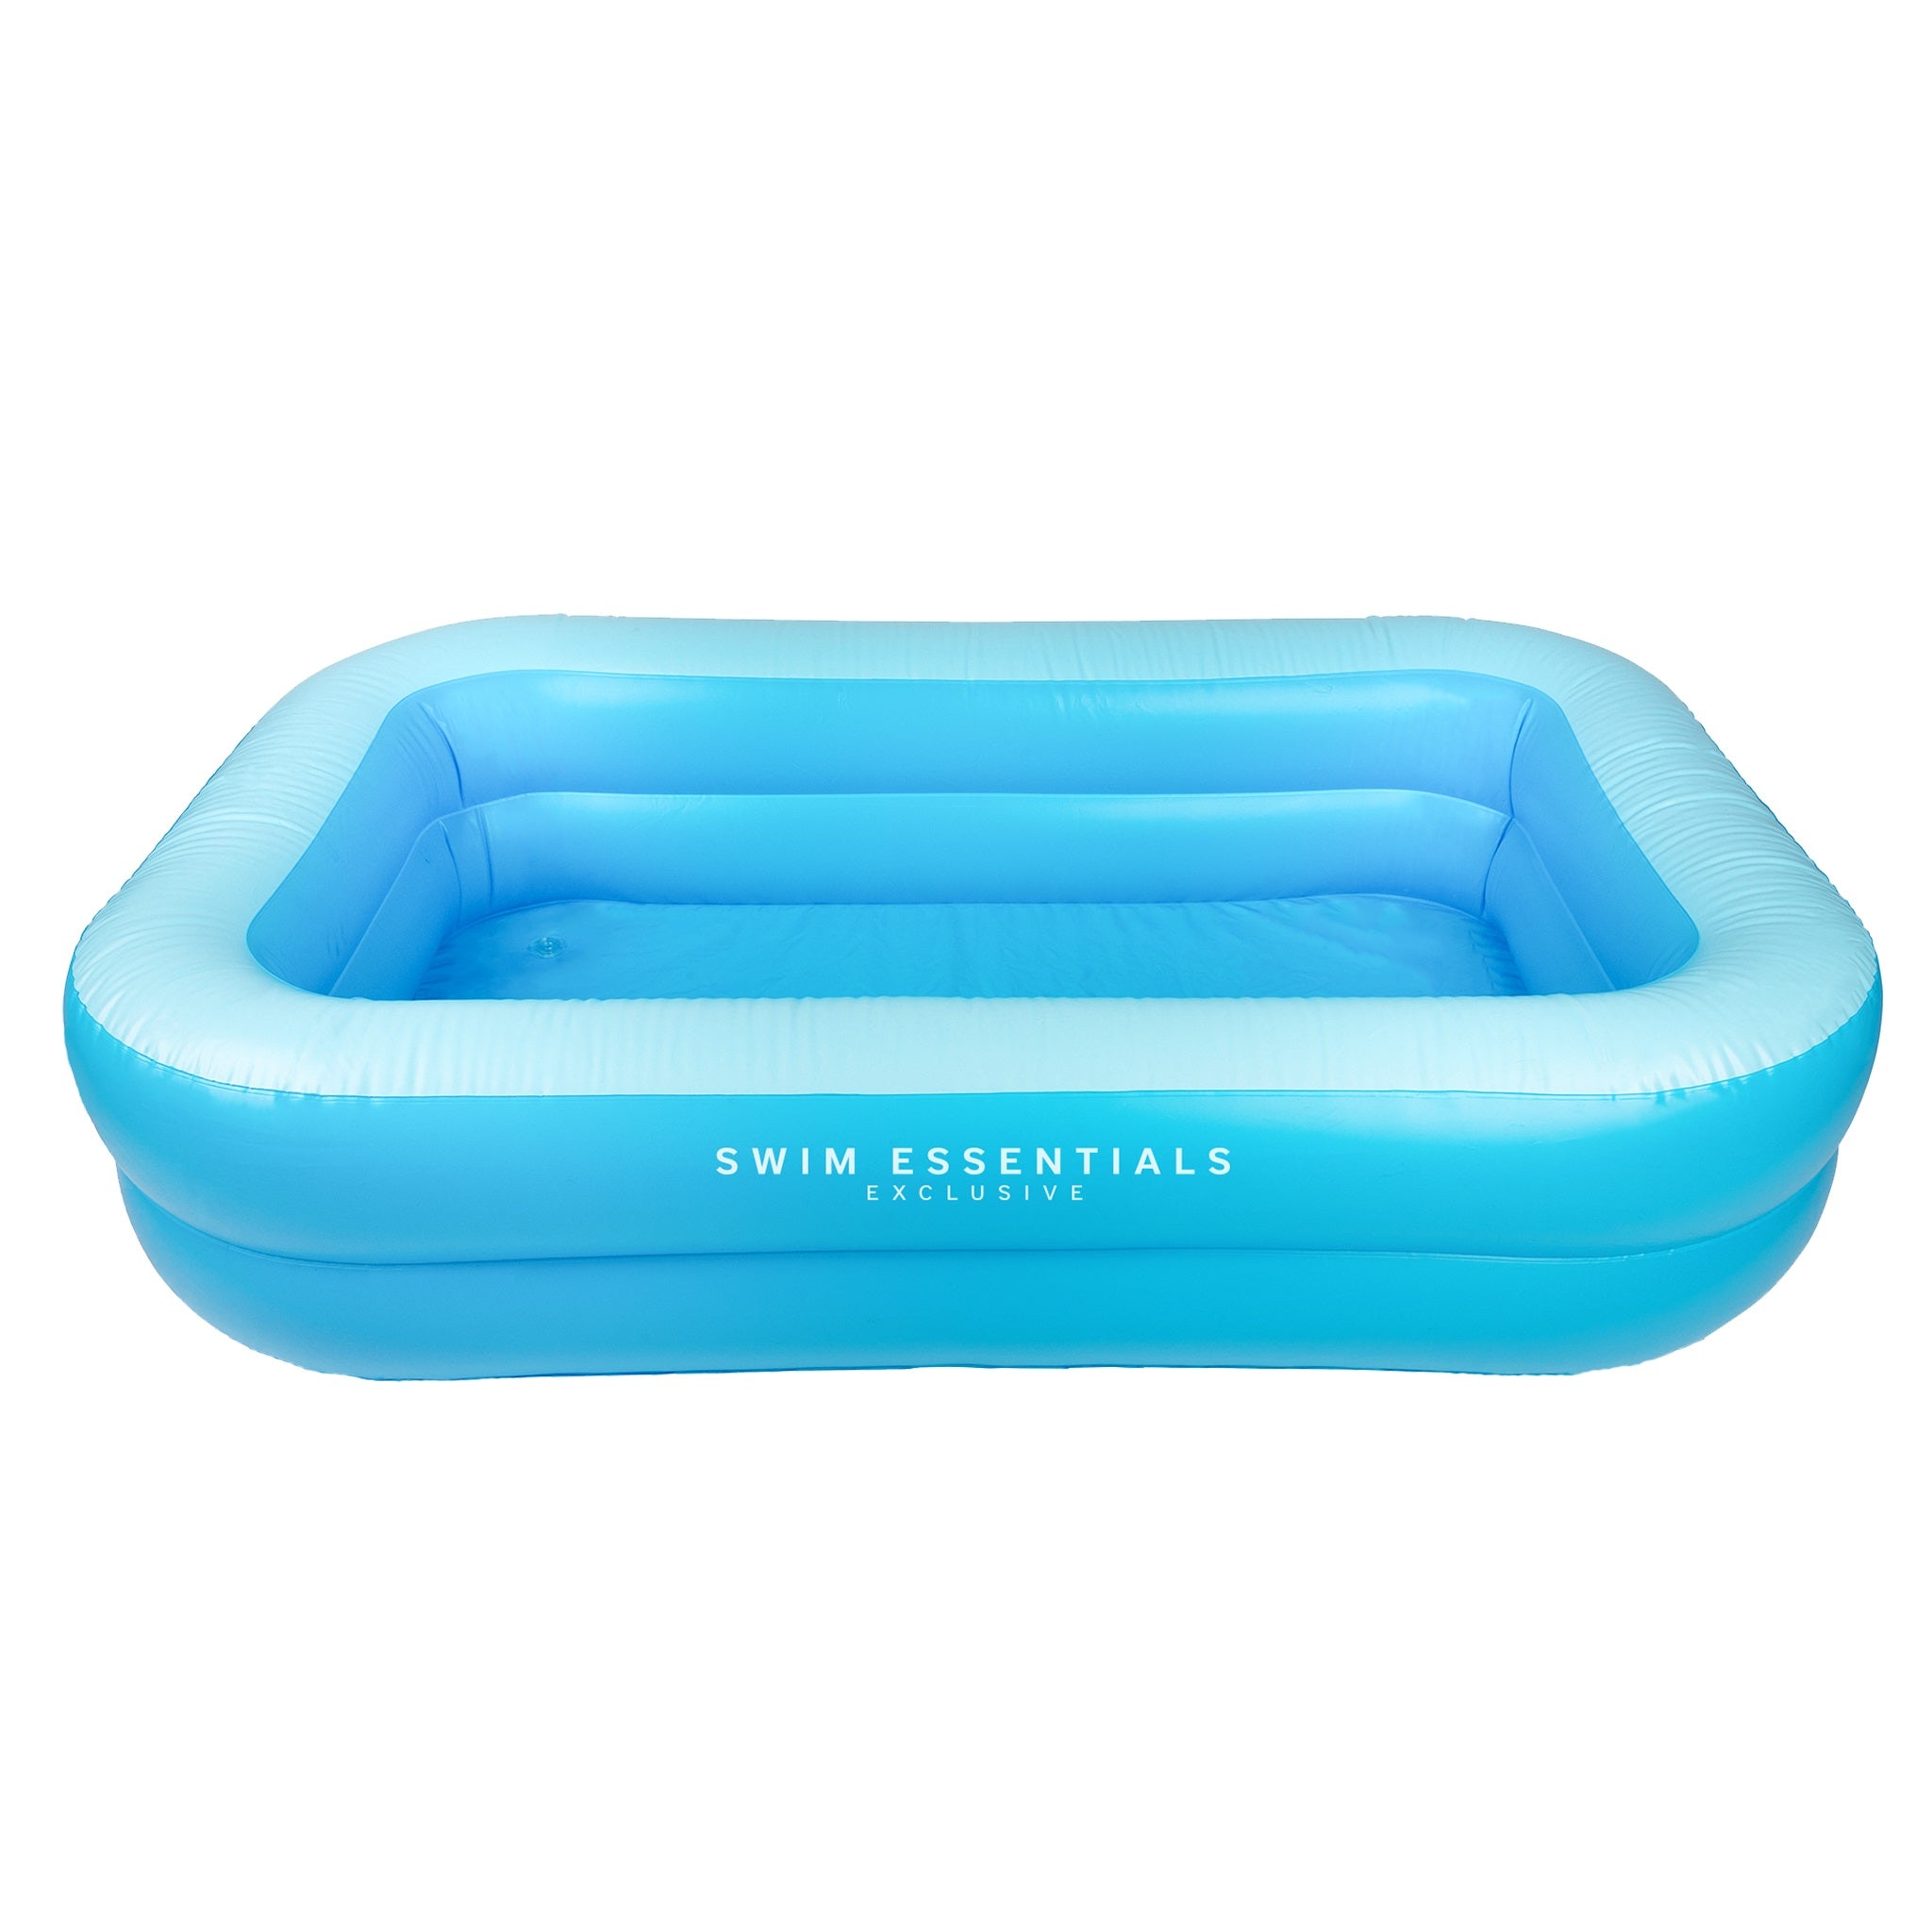 Swim Essentials - Pool Blue 211 x 132 cm